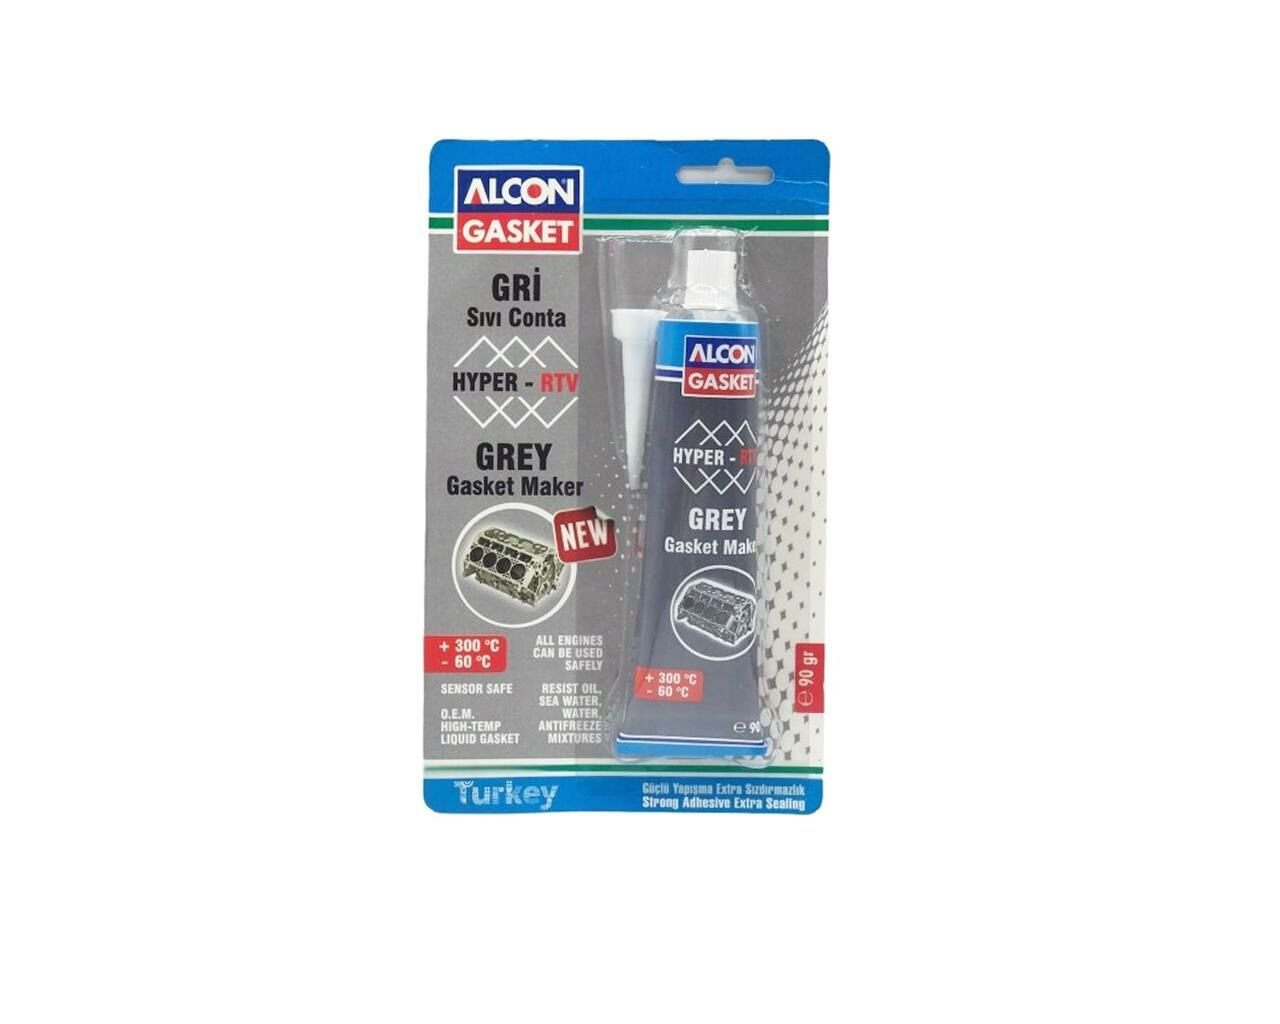 Alcon Hyper-RTV Nötr Sıvı Conta  M-3308 Gri 90 gr